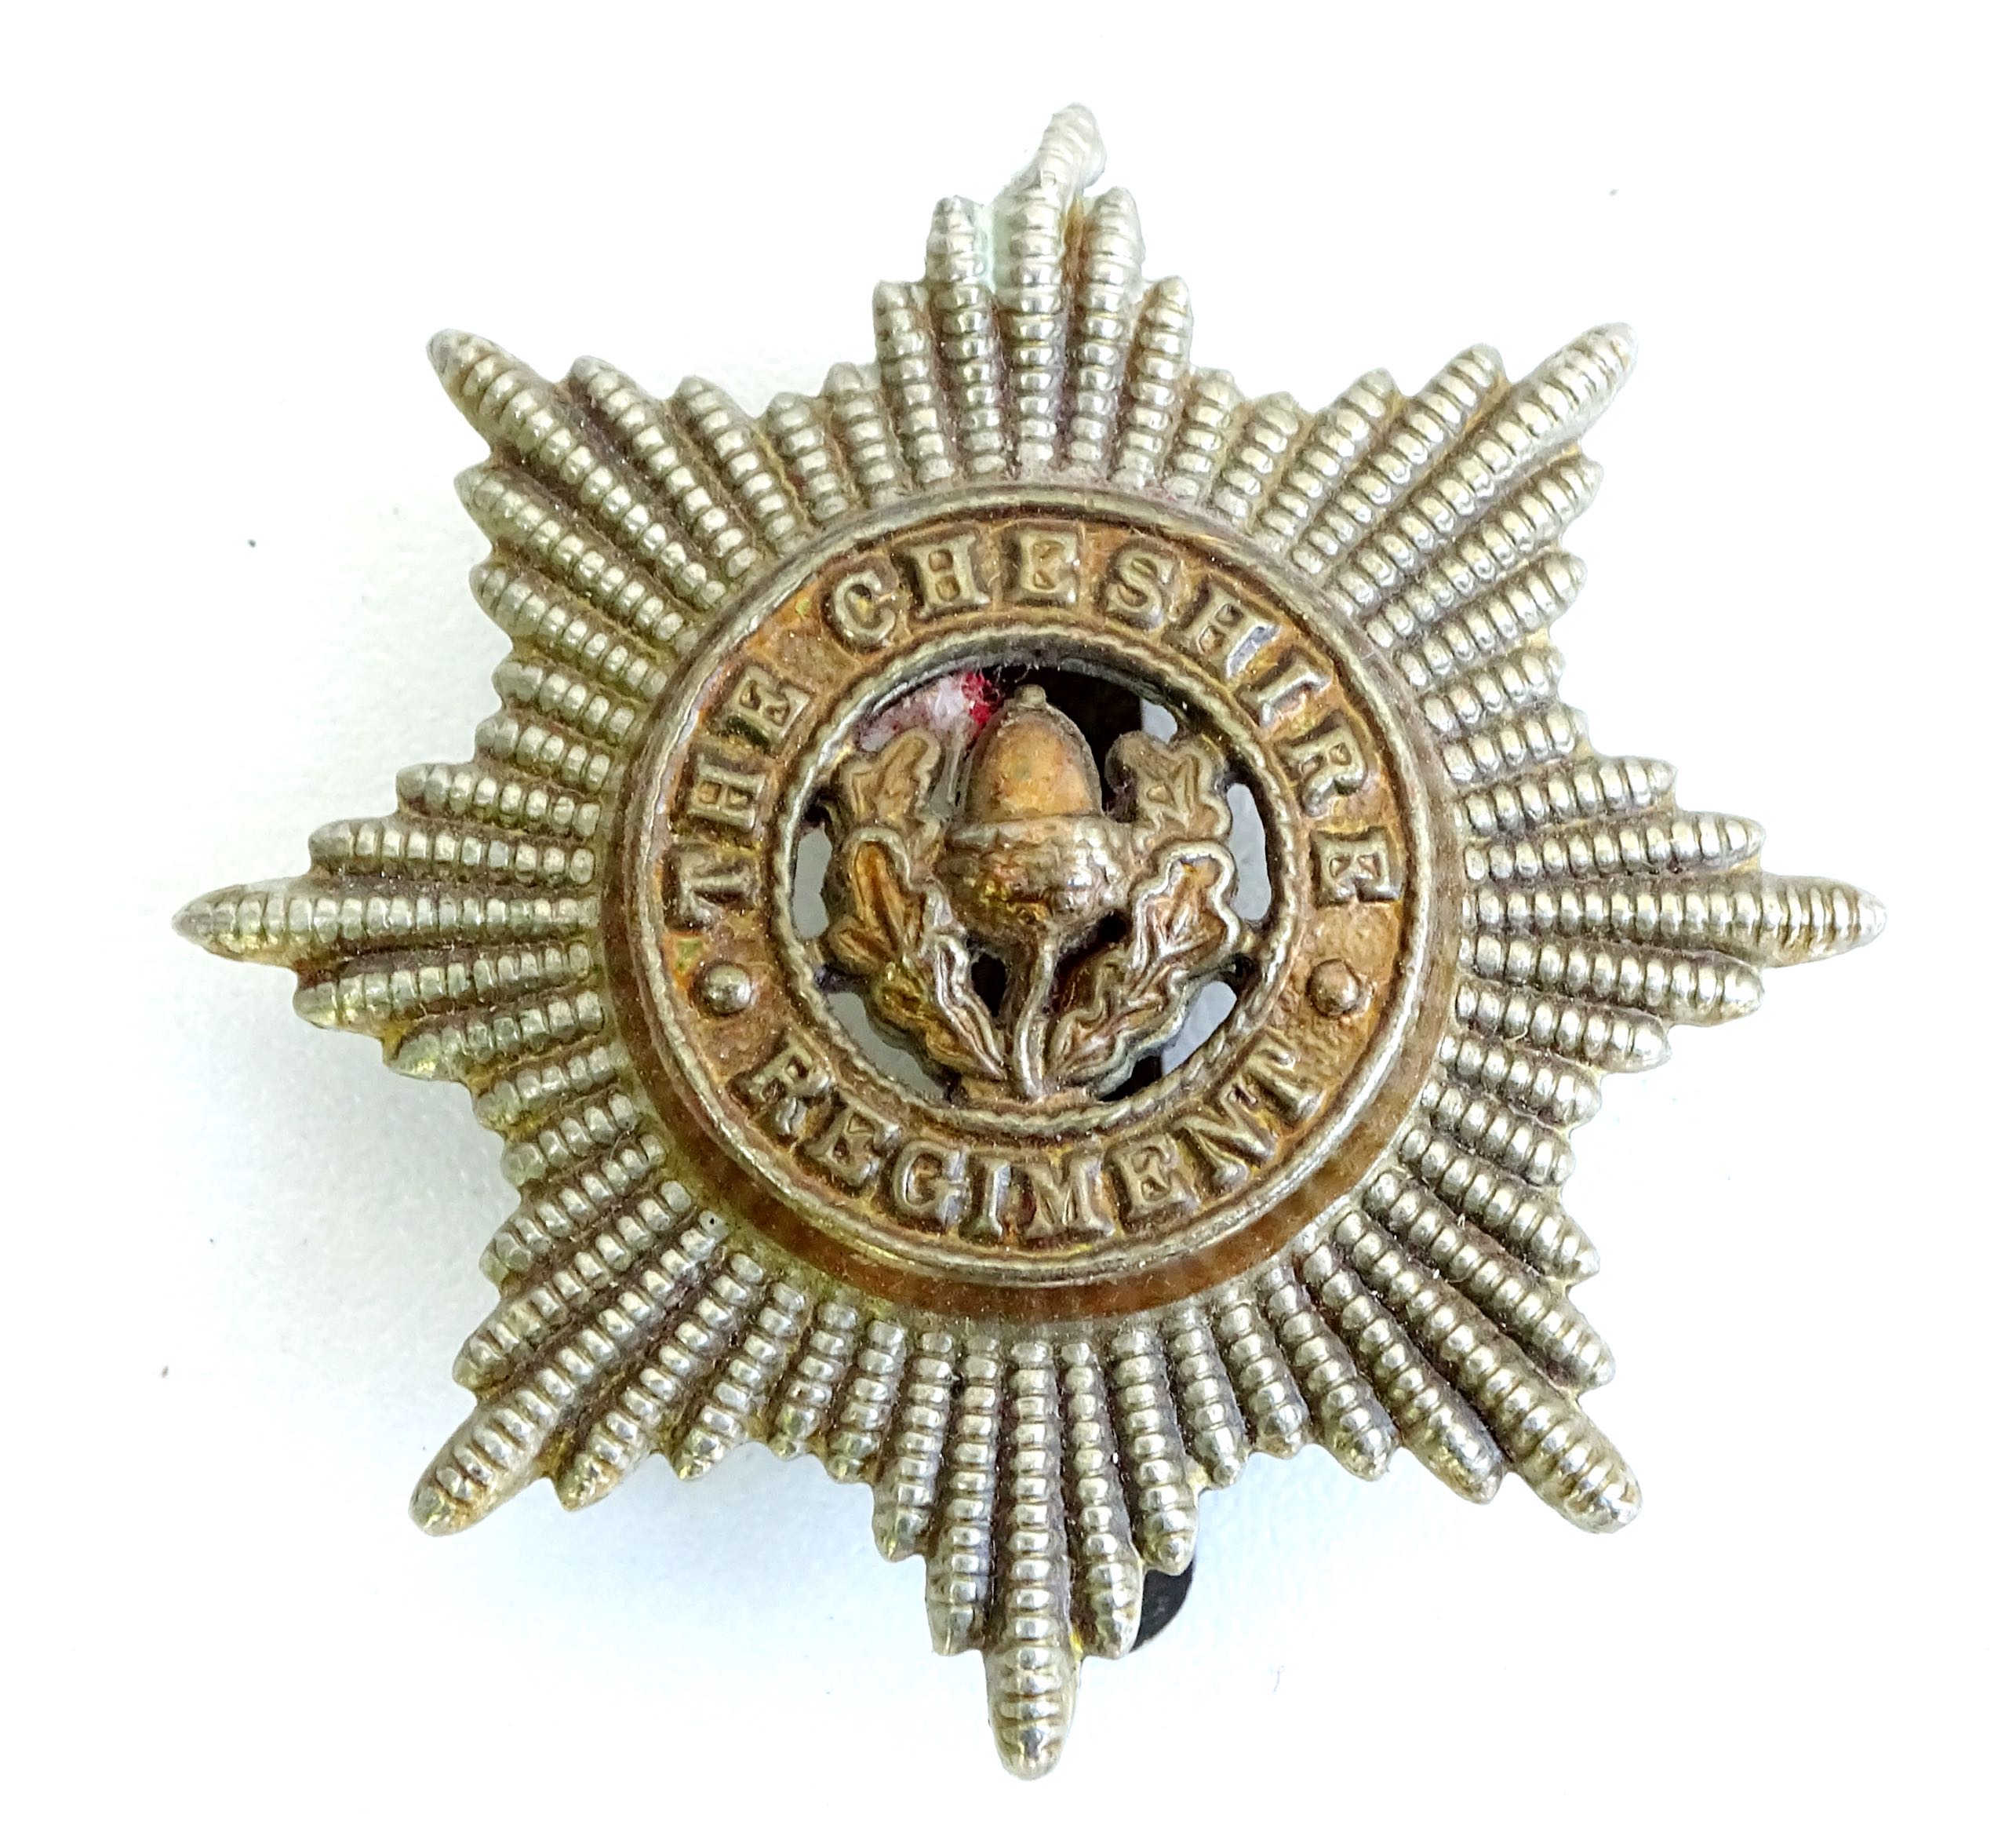 Cap Badge The Cheshire Regiment Post 1924